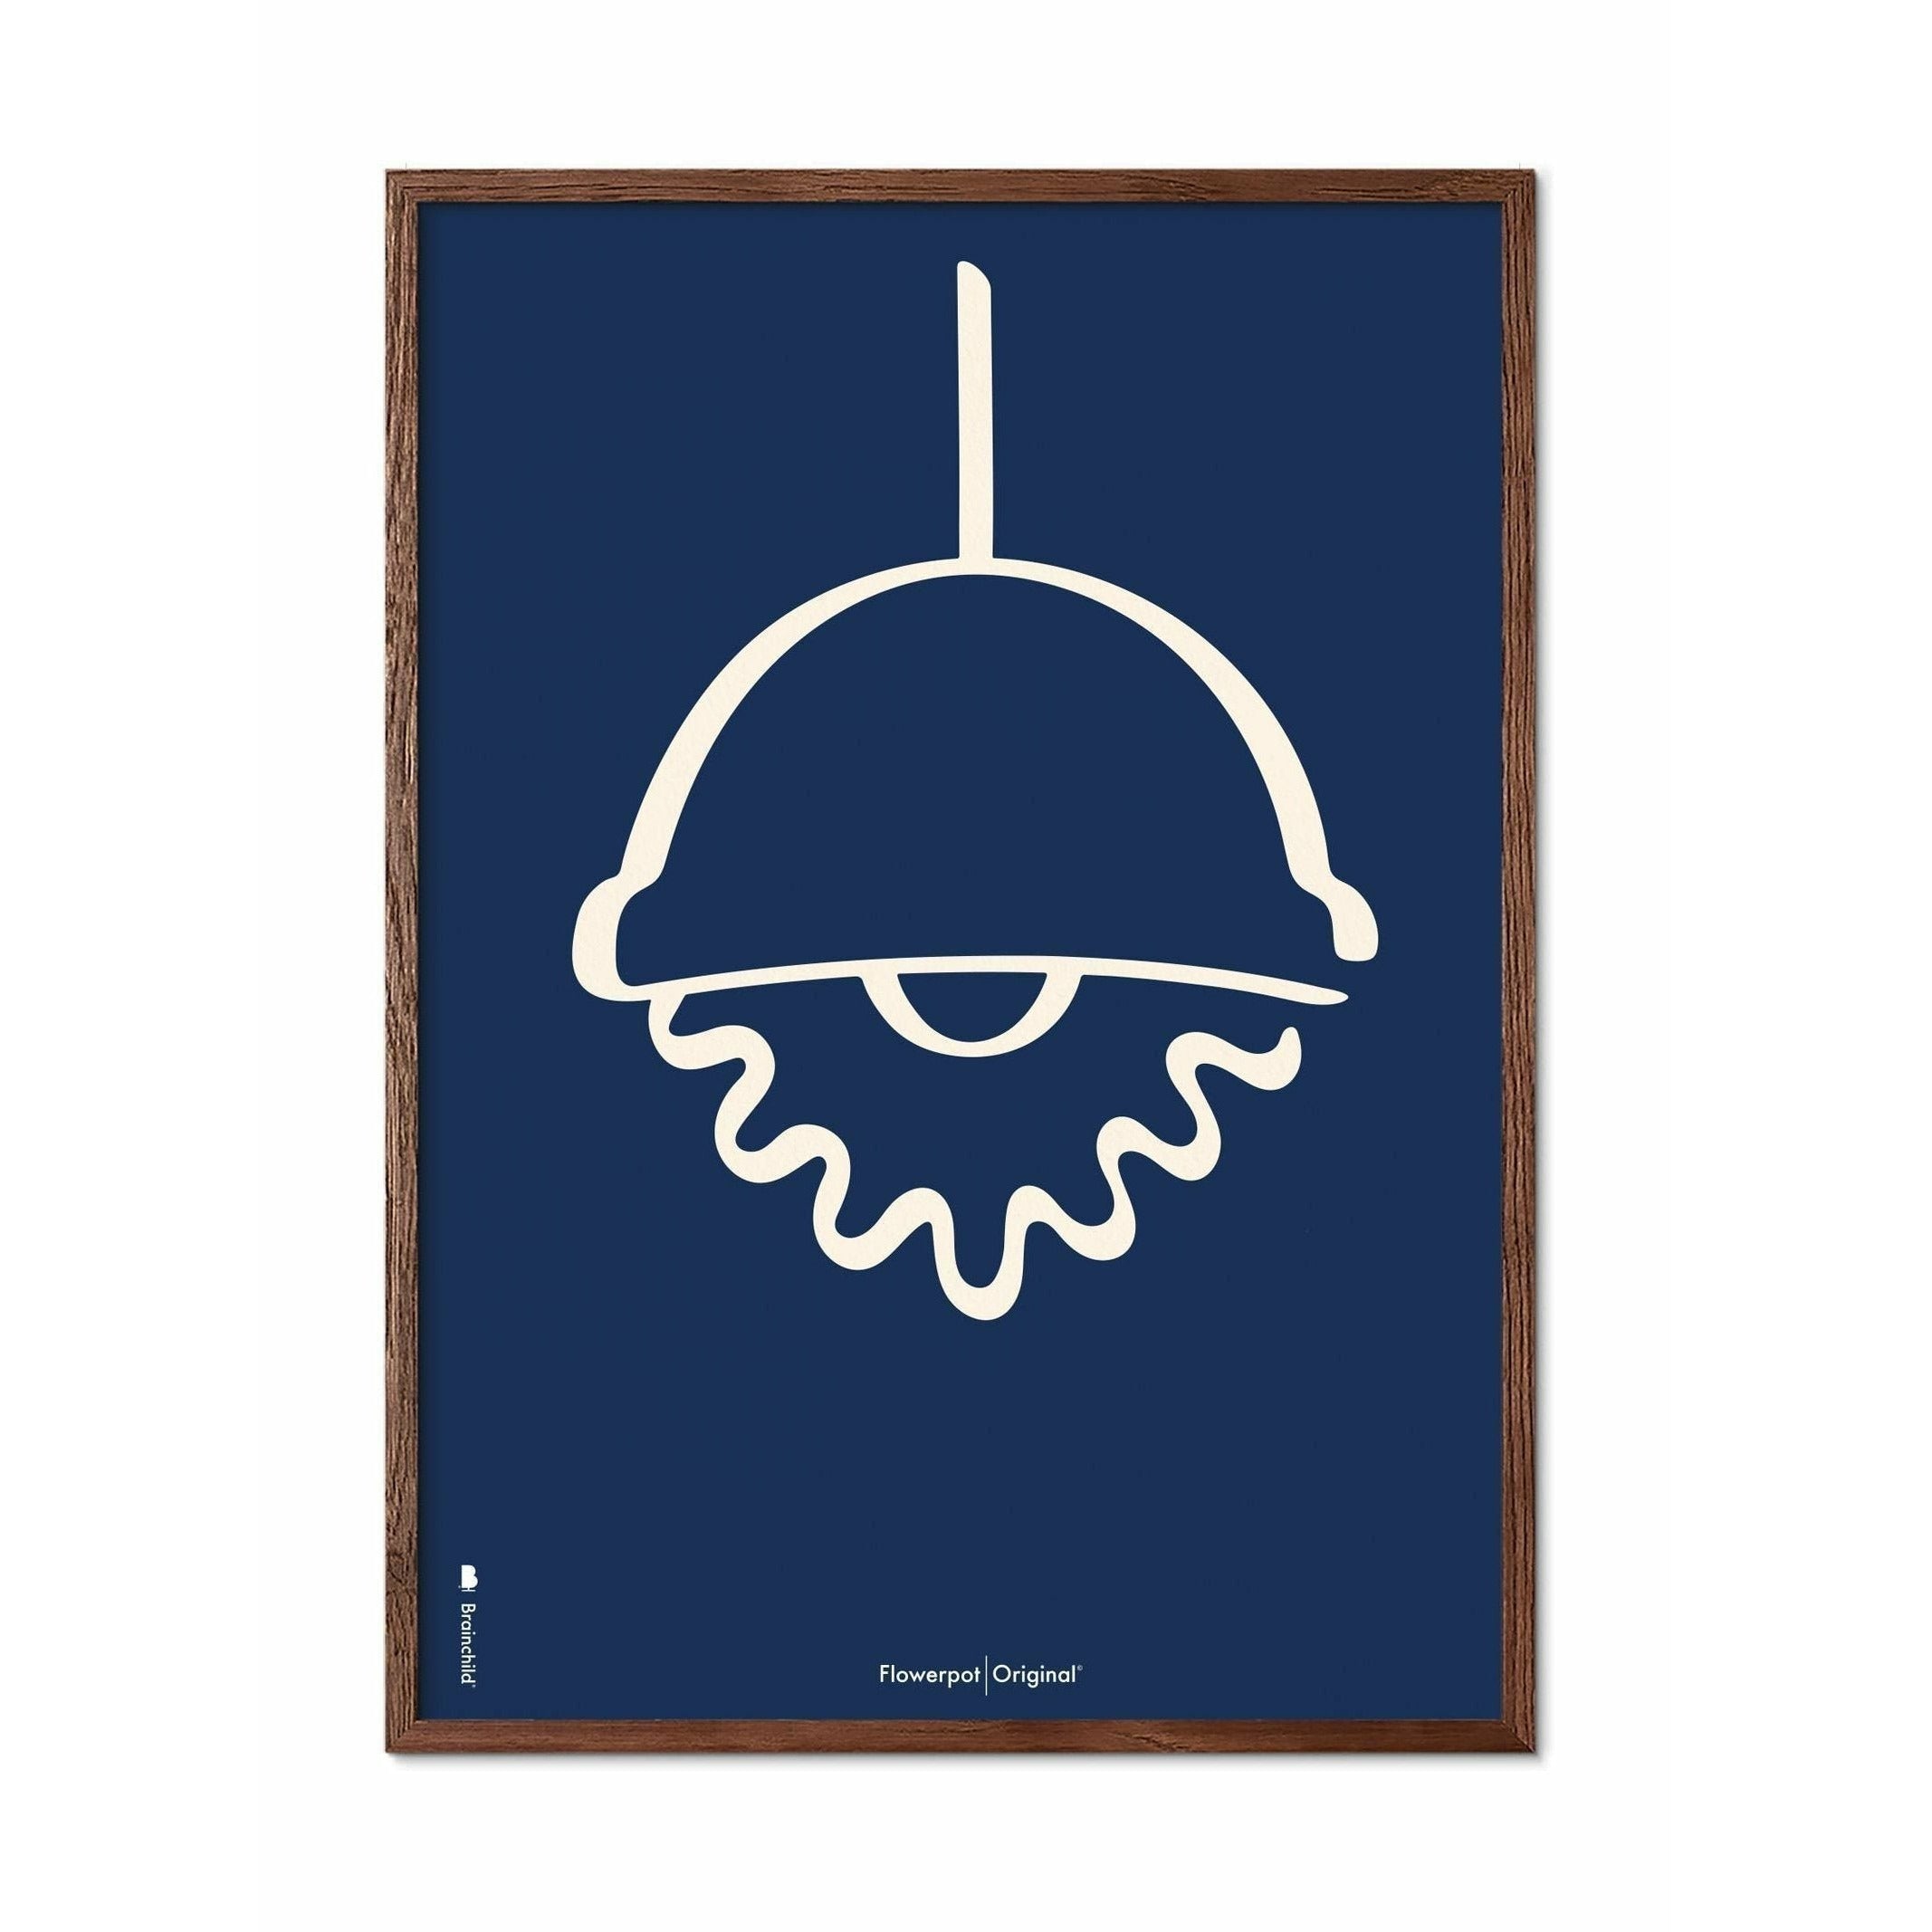 Brainchild Blumentopf Line Poster, Rahmen aus dunklem Holz 30x40 Cm, blauer Hintergrund